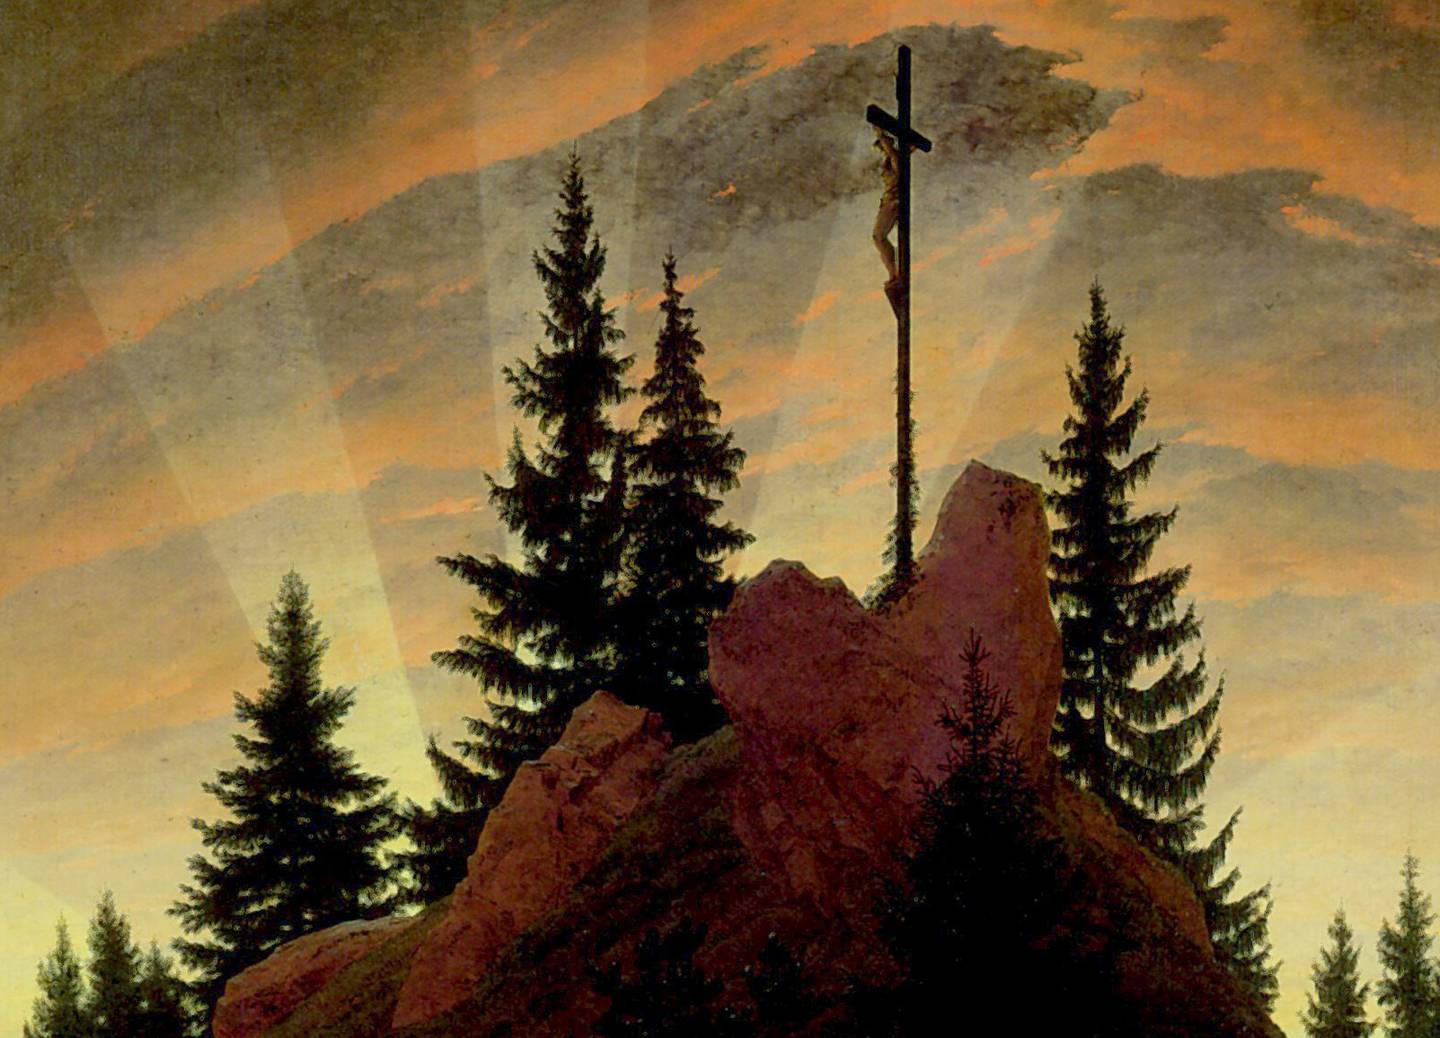 Caspar David Friedrich var ein av dei fremste representantane for tysk romantisk målarkunst. Dette bildet av korset på berget er frå 1807/1808. Forfattar Geir Uthaug les det som ei oppfordring om å ta korset på alvor. Foto: Wikimedia commons (utsnitt)   